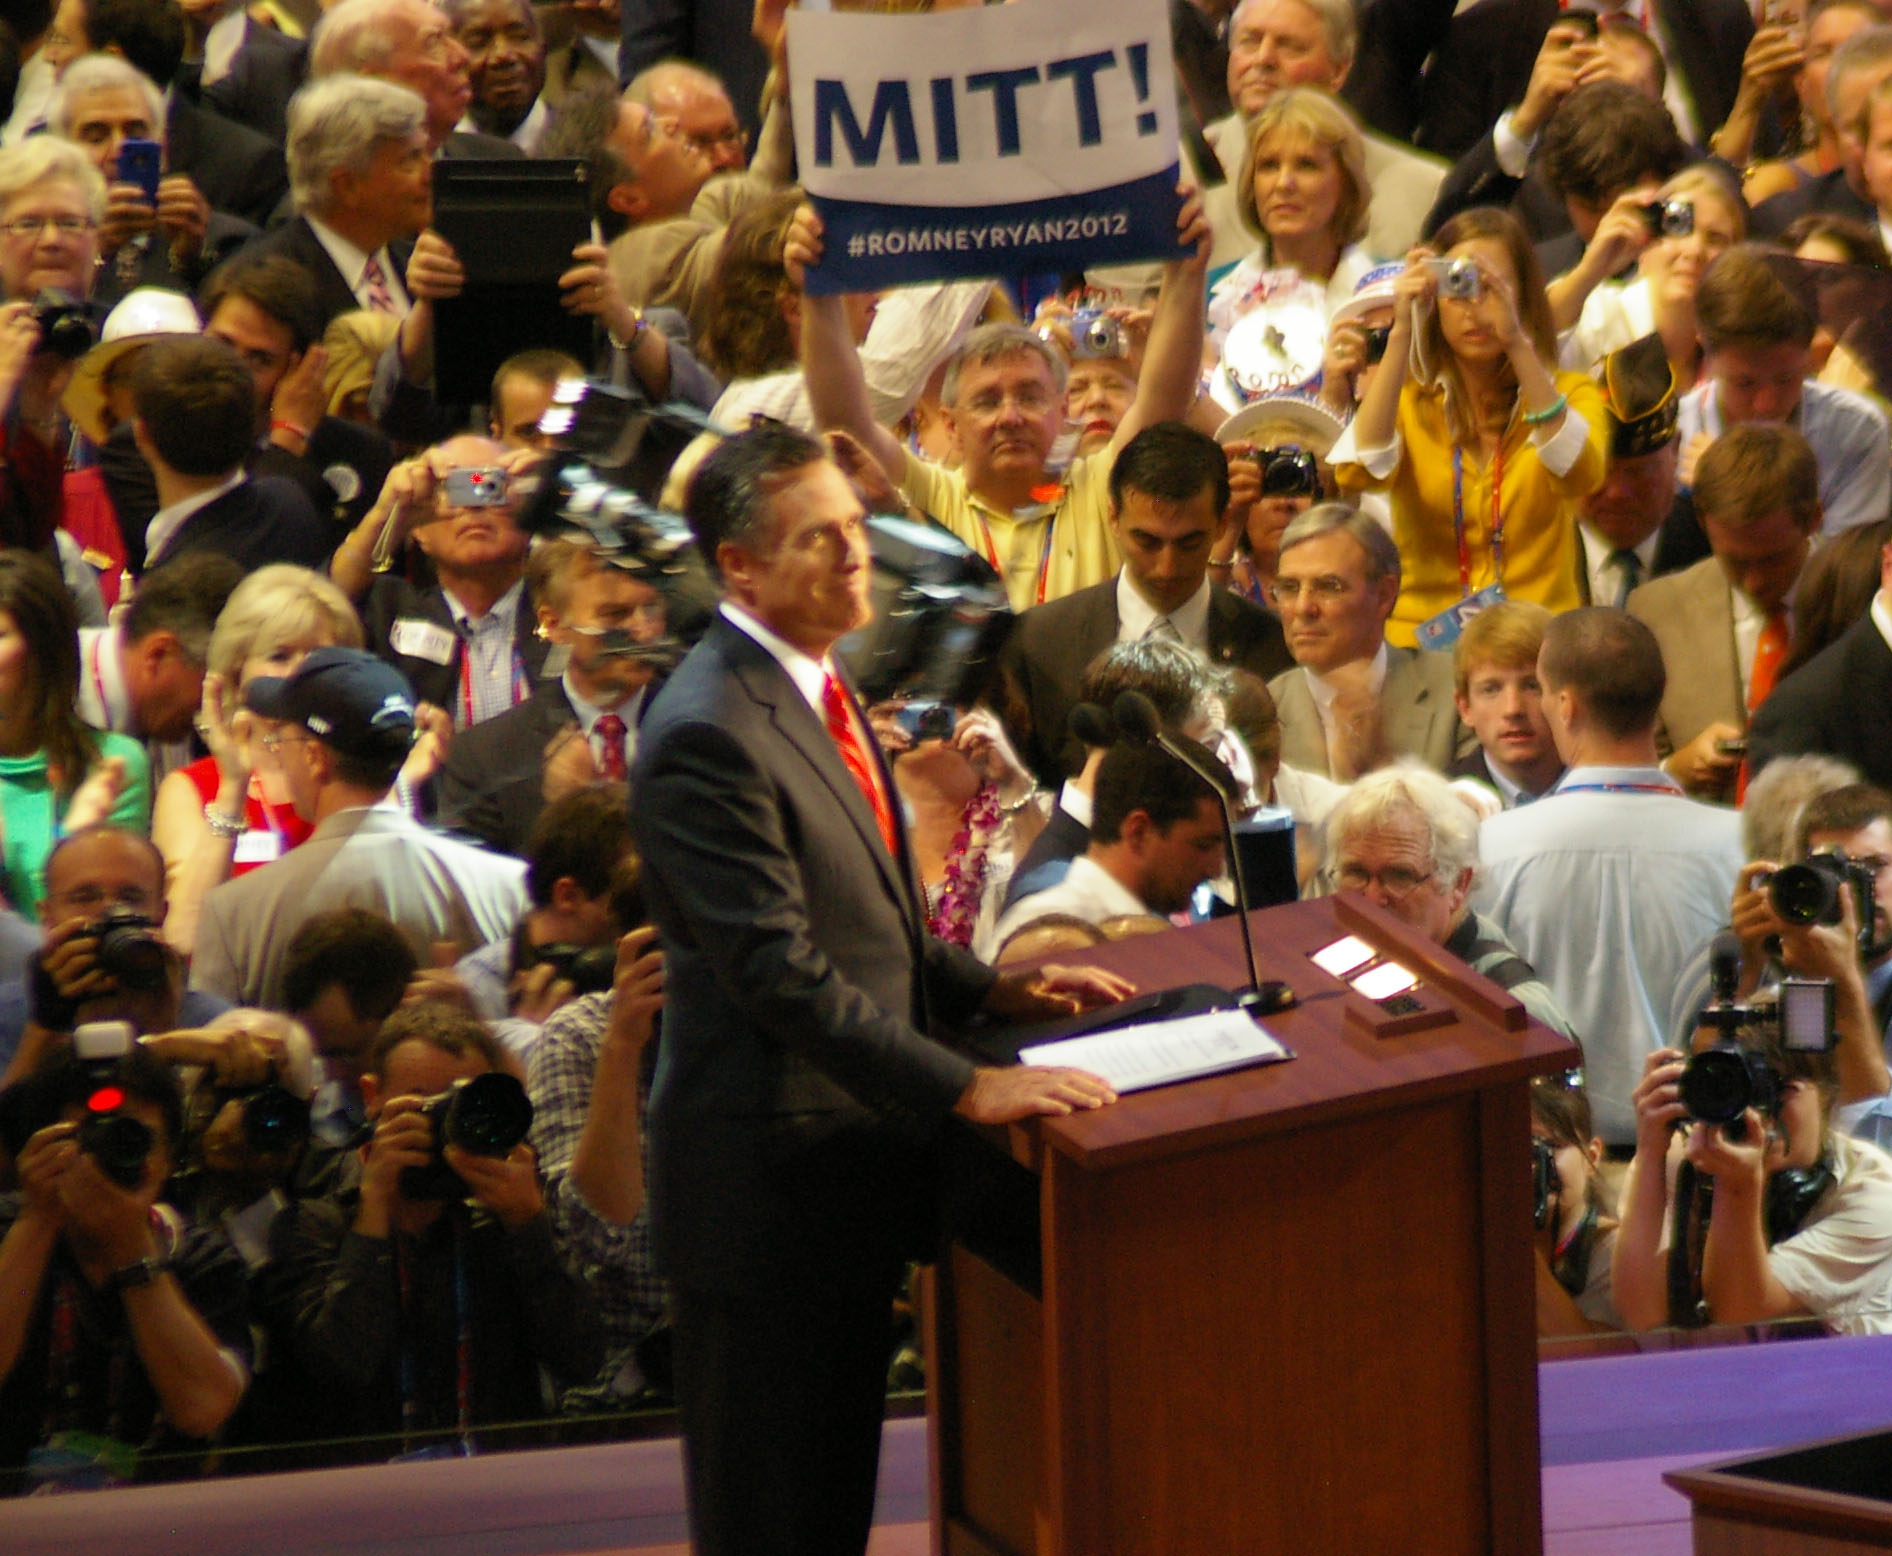 Mitt Romney at RNC 2012